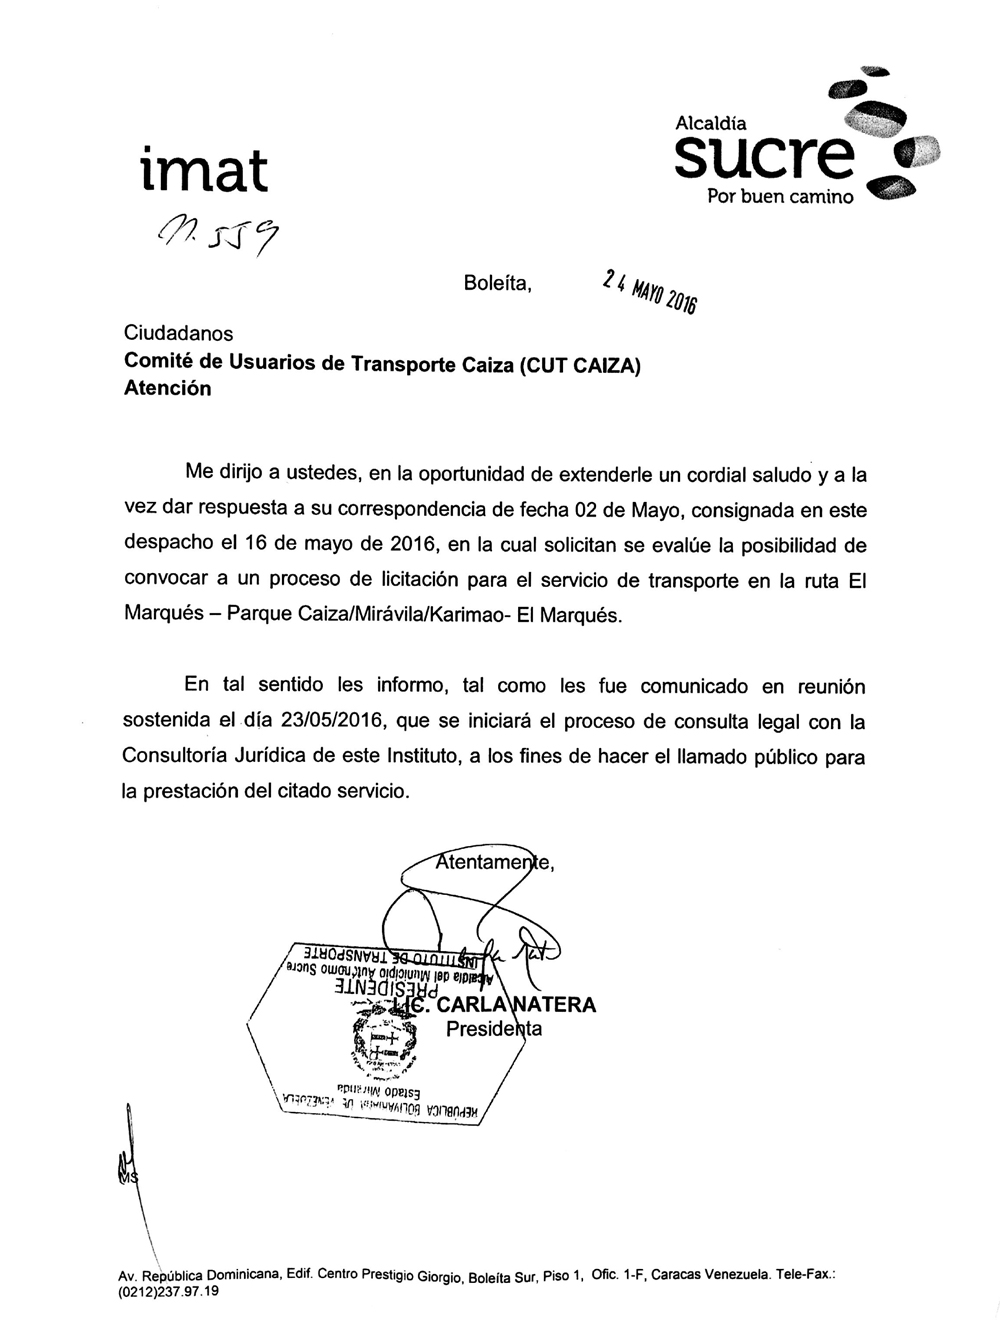 Comité de Usuarios de Transporte Caiza: Respuesta del IMAT 